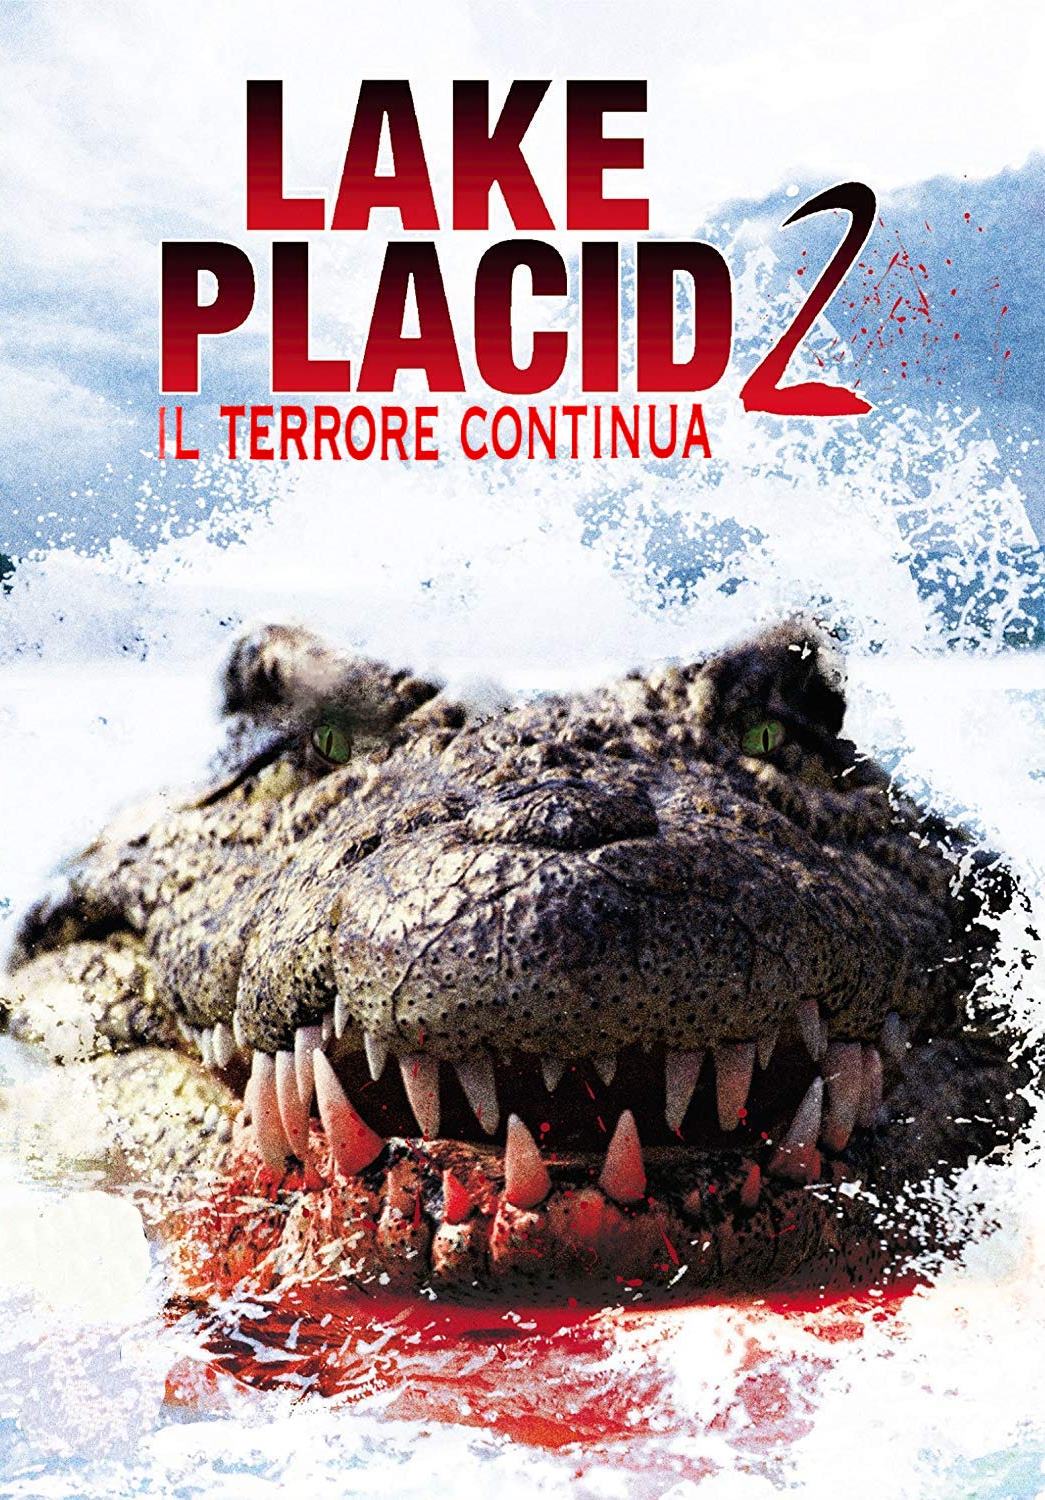 Lake Placid 2 – Il terrore continua [HD] (2007)